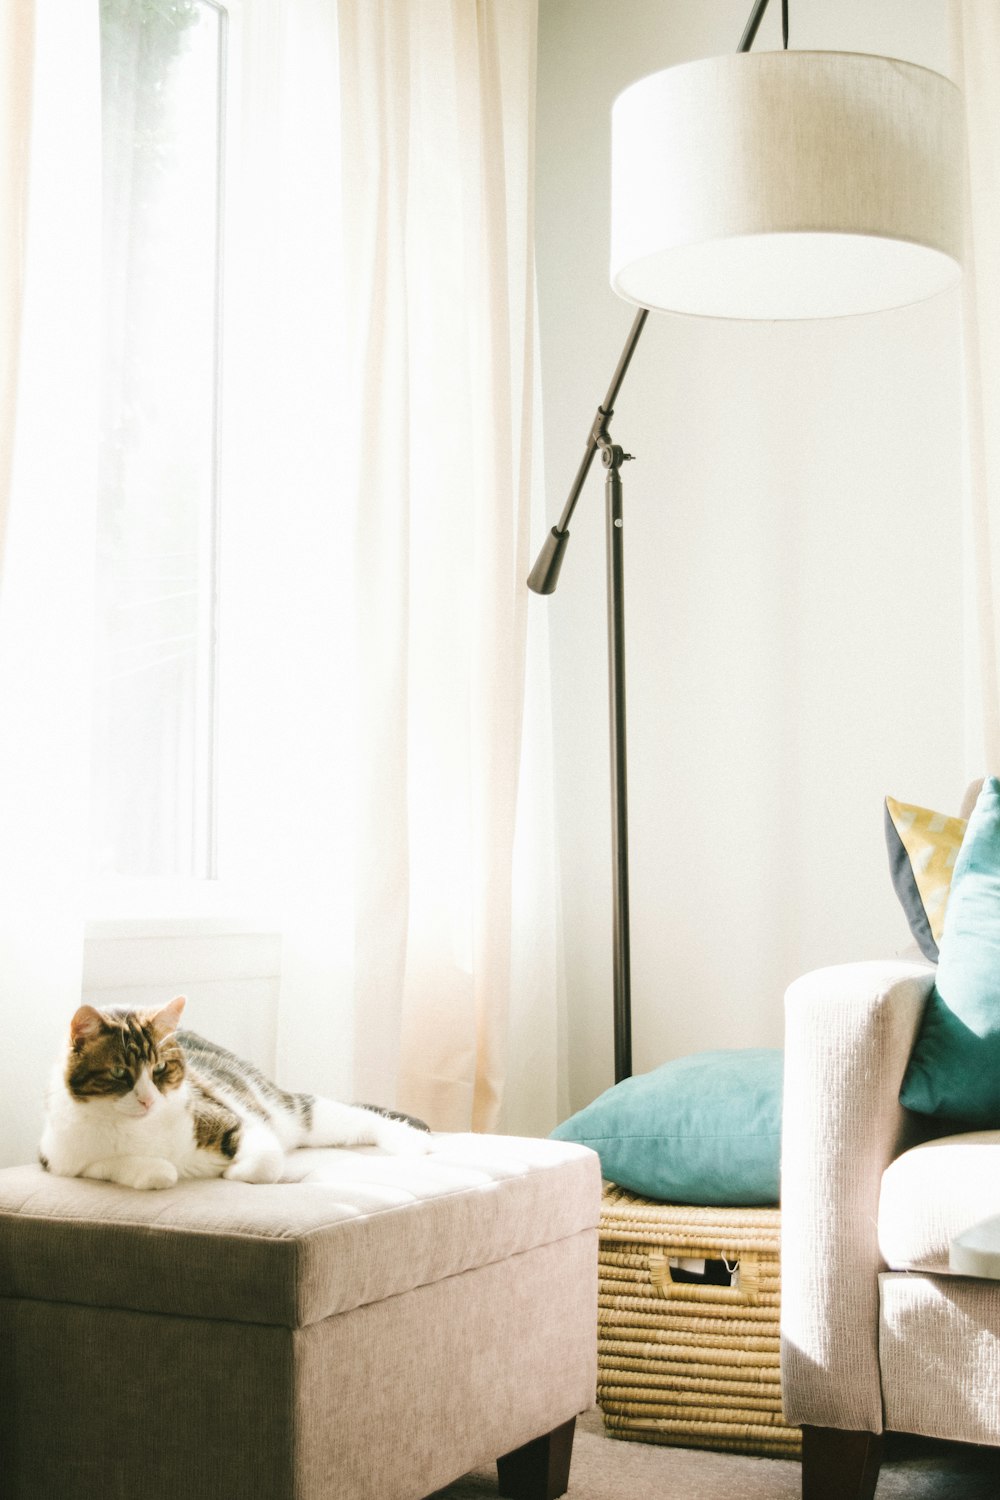 ソファーの近くの茶色のオットマンに横たわっている灰色と白の猫、明るい部屋の中の洋服のハンパーとフロアランプ